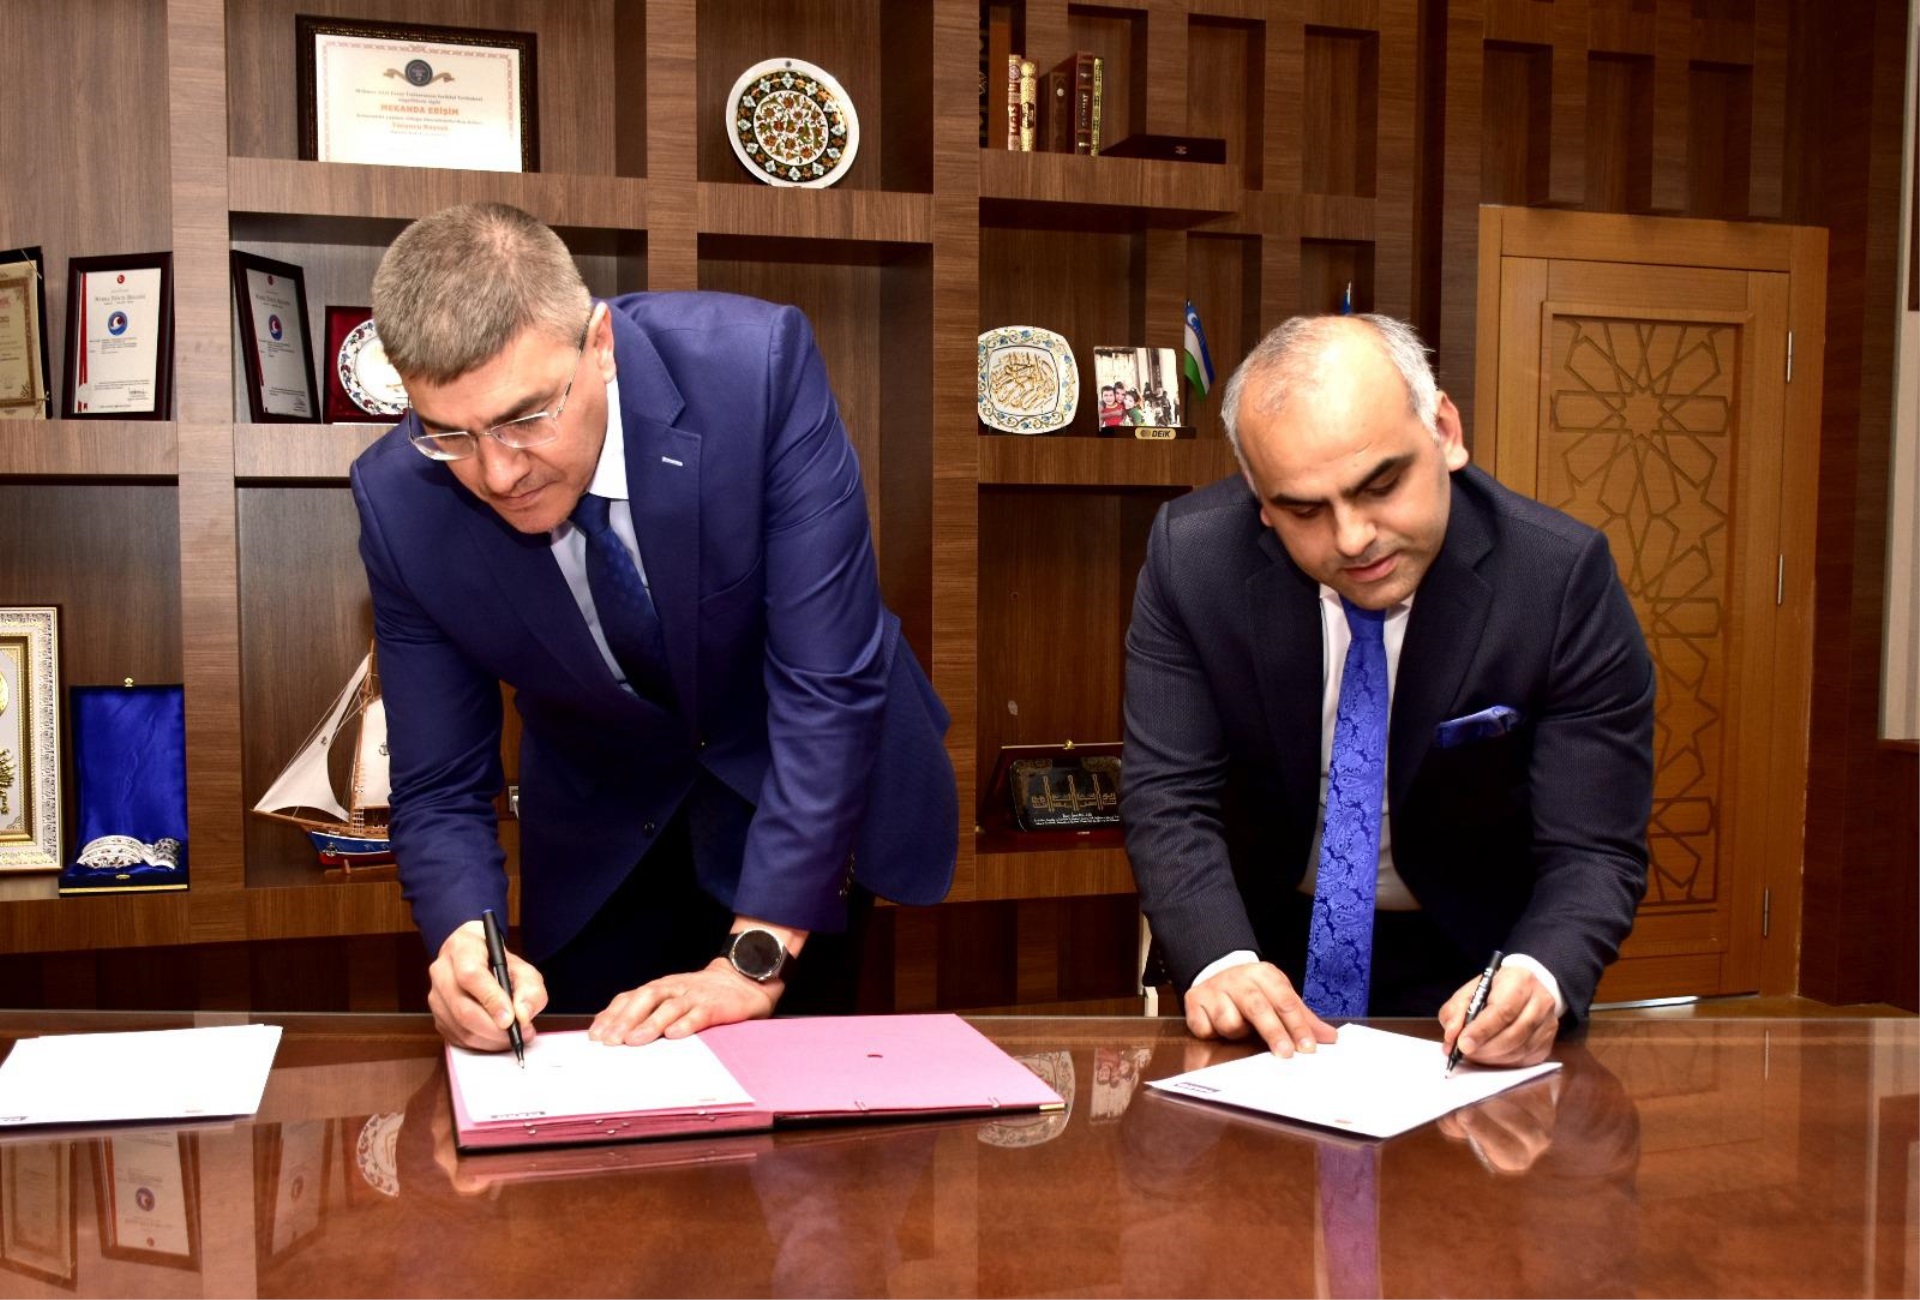 Burdur Mehmet Akif Ersoy Üniversitesi ile Burdur Cumhuriyet Başsavcılığı Denetimli Serbestlik Müdürlüğü  arasında işbirliği protokolü imzalandı